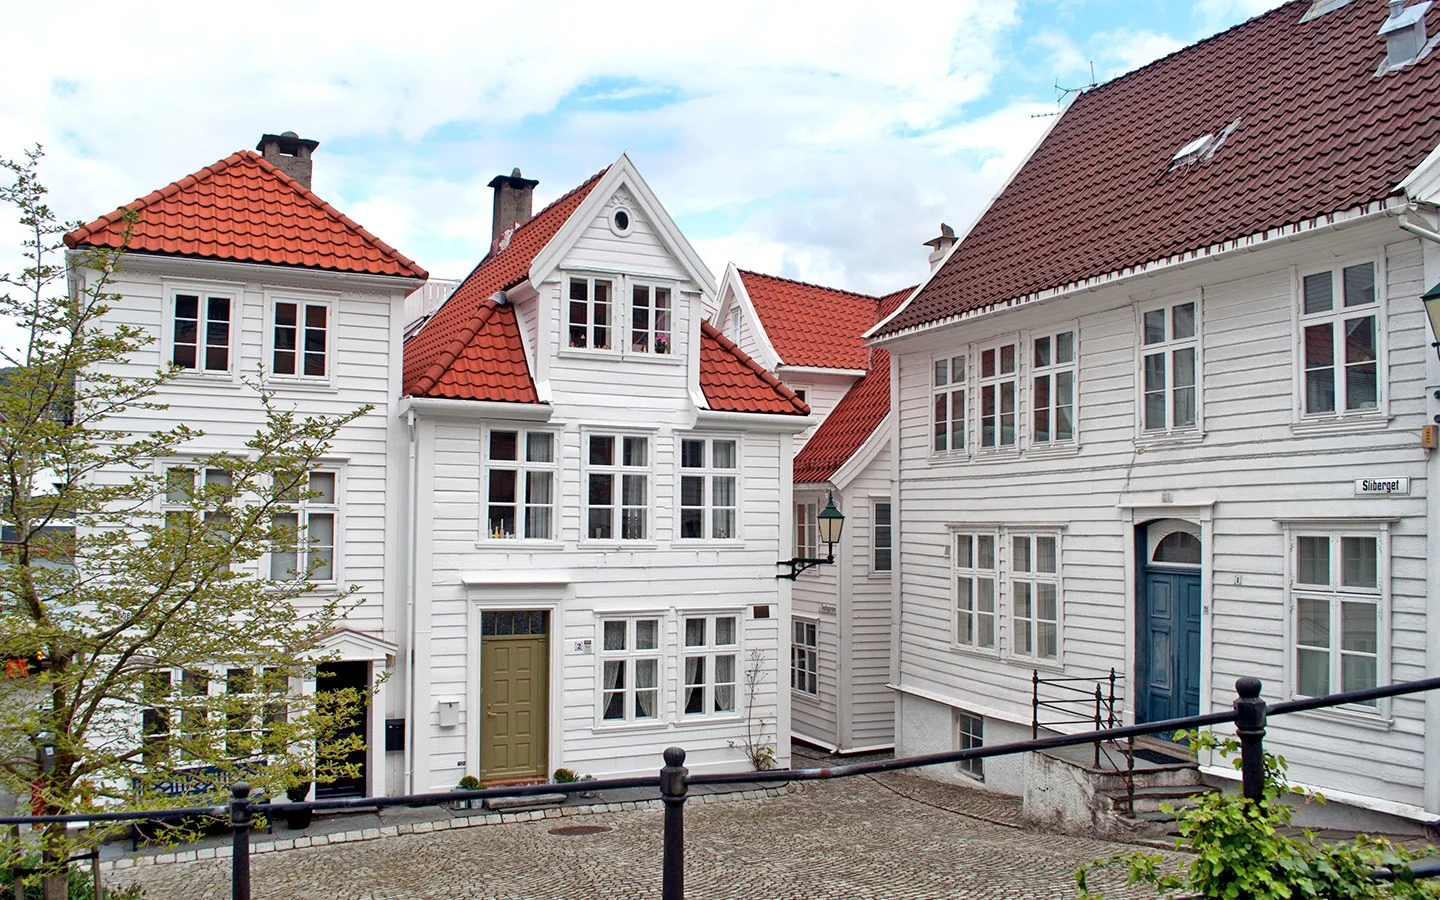 Wooden houses in Bergen Norway